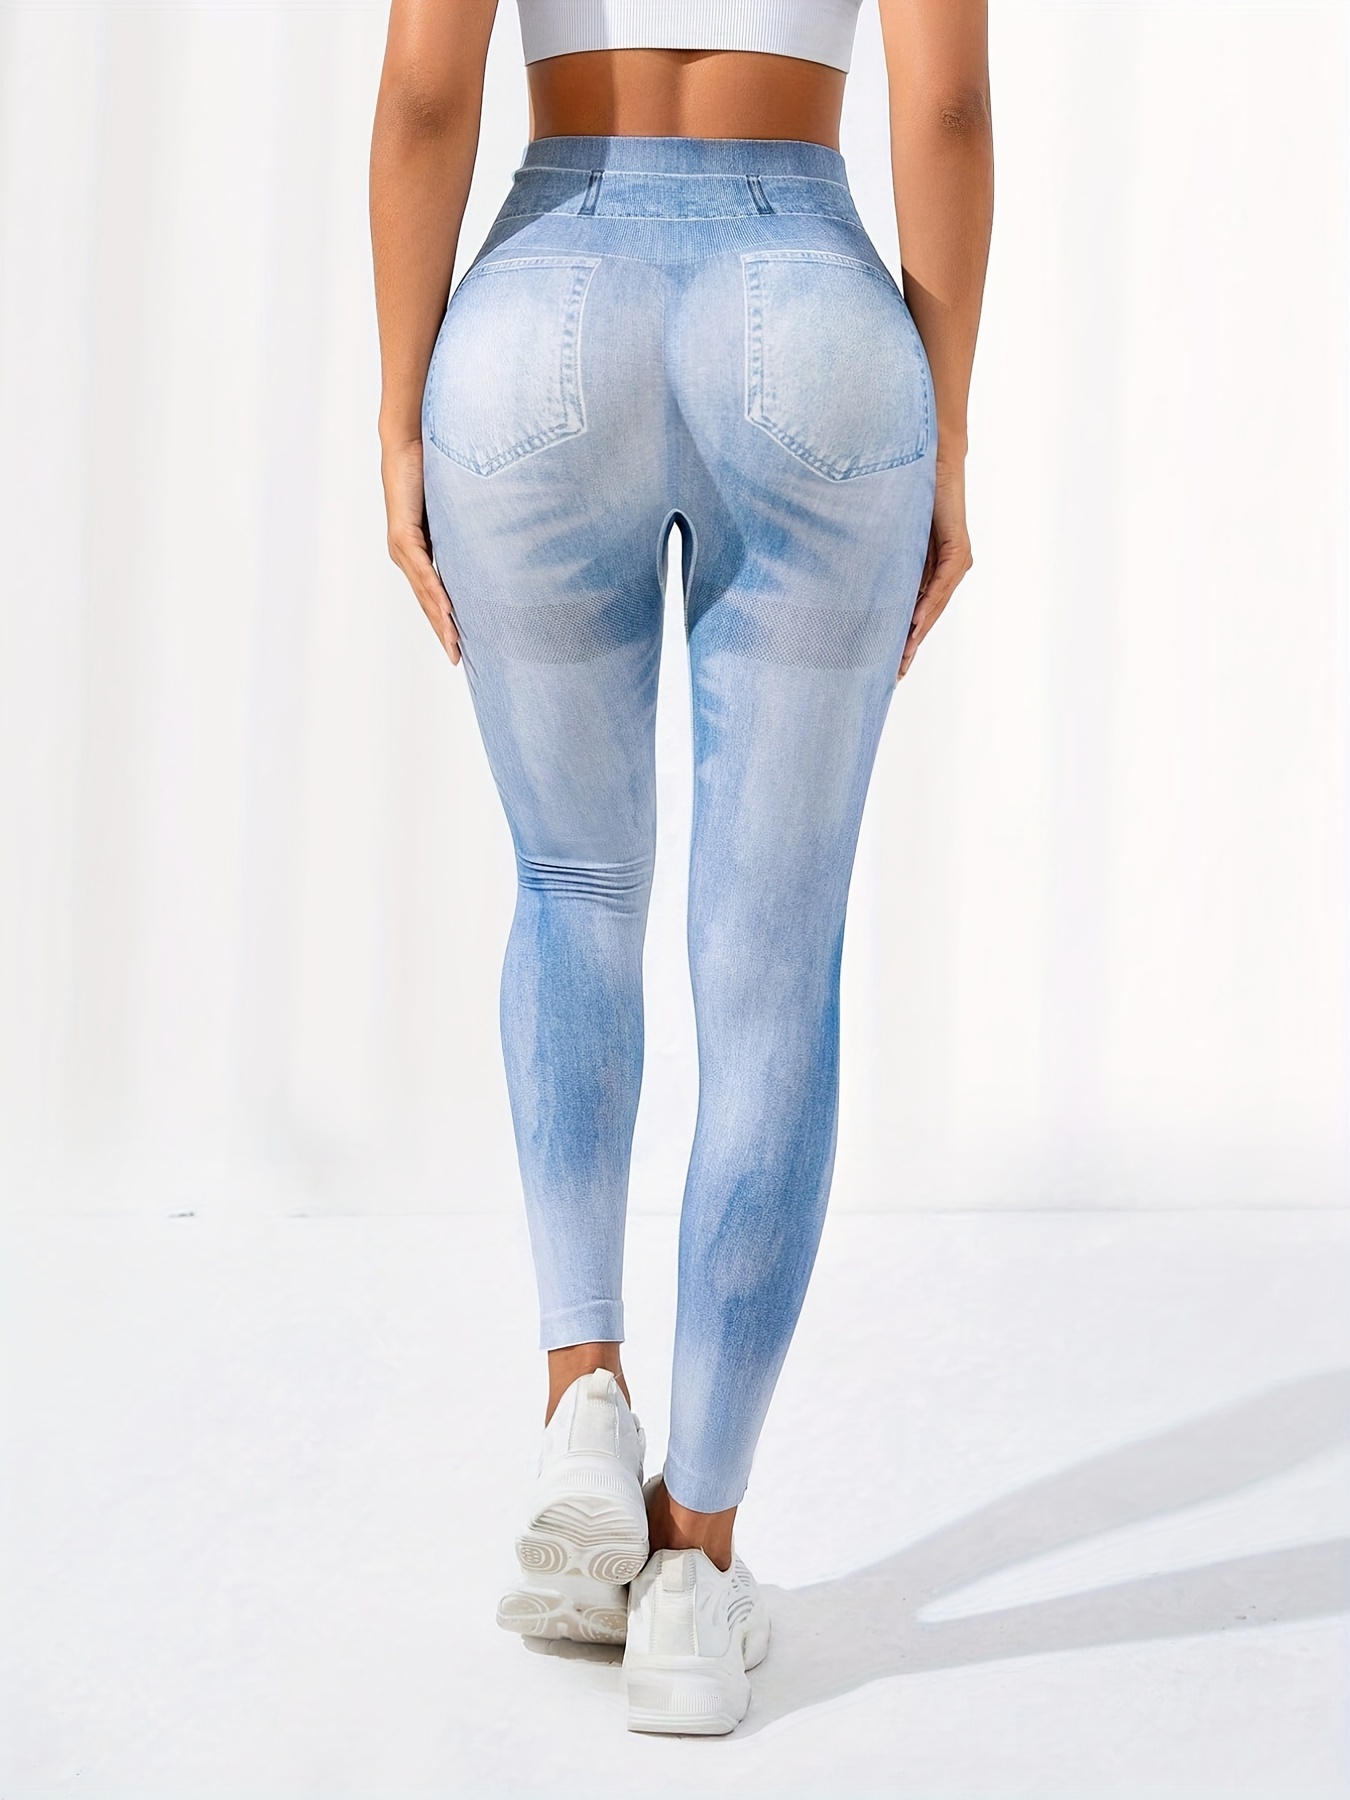 👖 Pantalones de Malla Deportiva PUSH UP para Mujer Leggings con estampado  3D 👖